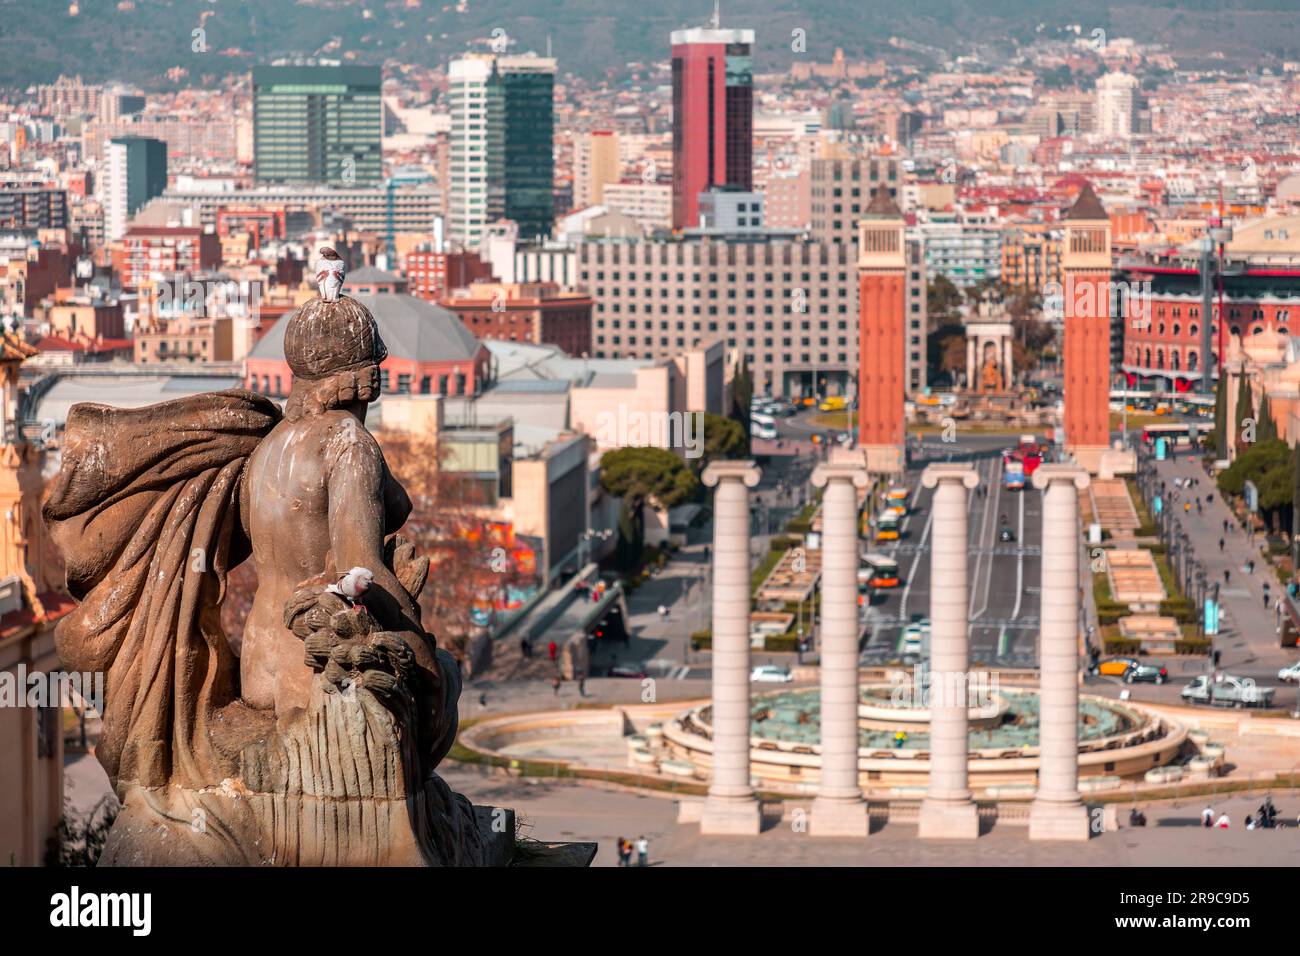 Placa d'Espanya è una delle piazze più importanti di Barcellona, costruita per l'esposizione internazionale di Barcellona del 1929. Foto Stock